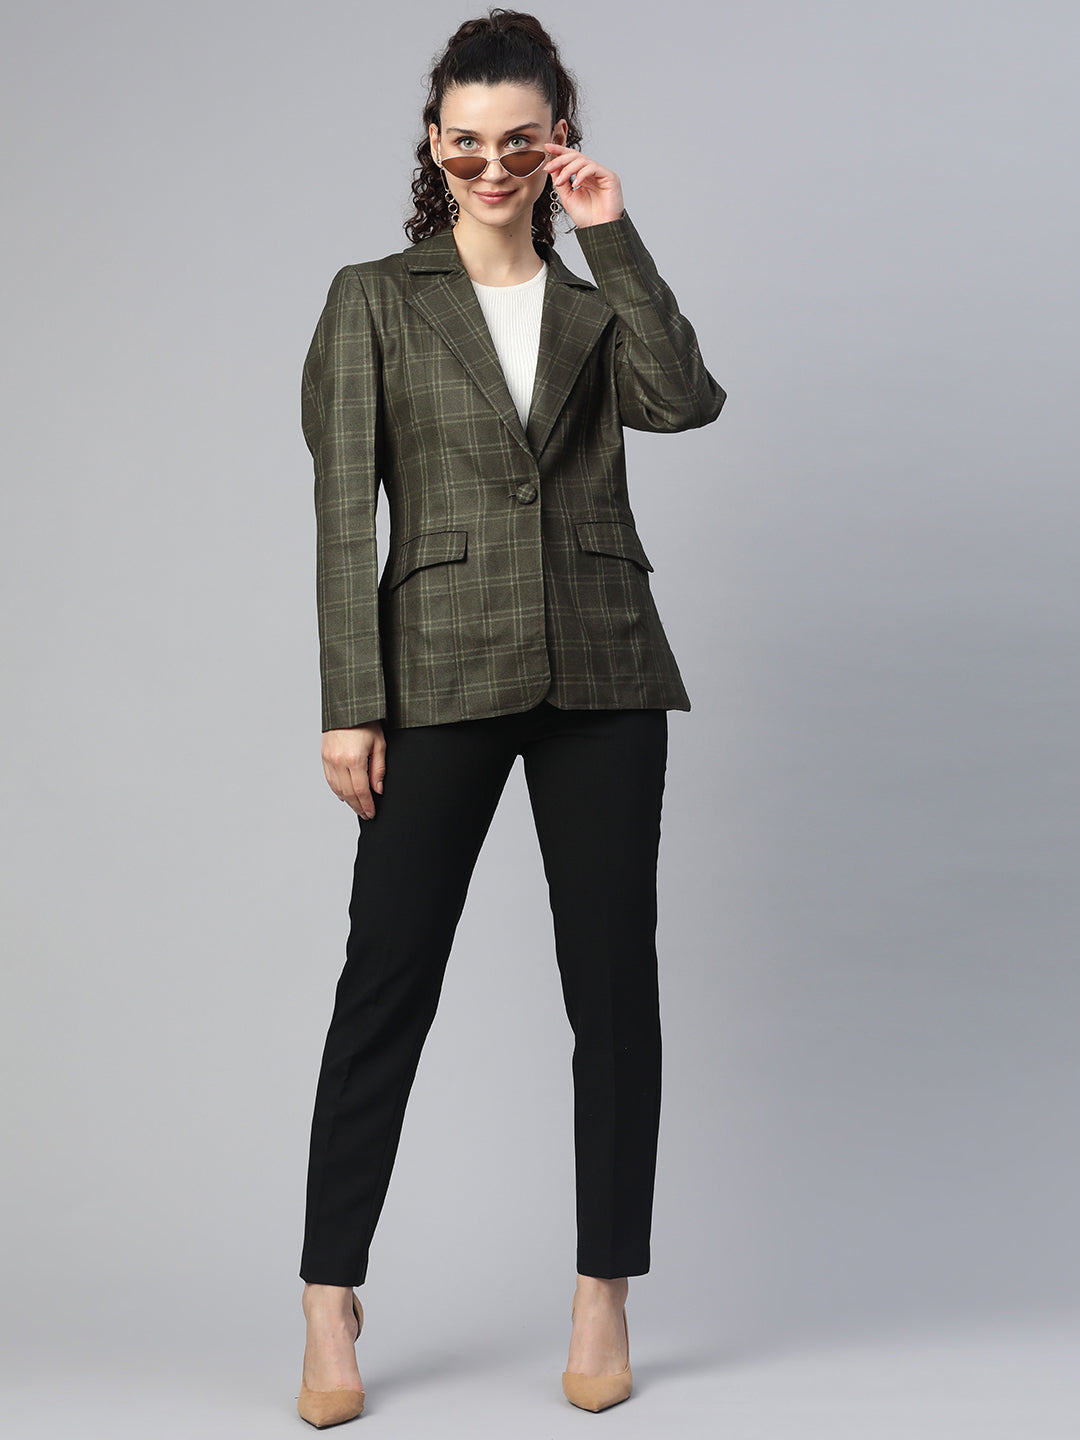 Tweed Jacket Women Plus Size | ShopStyle